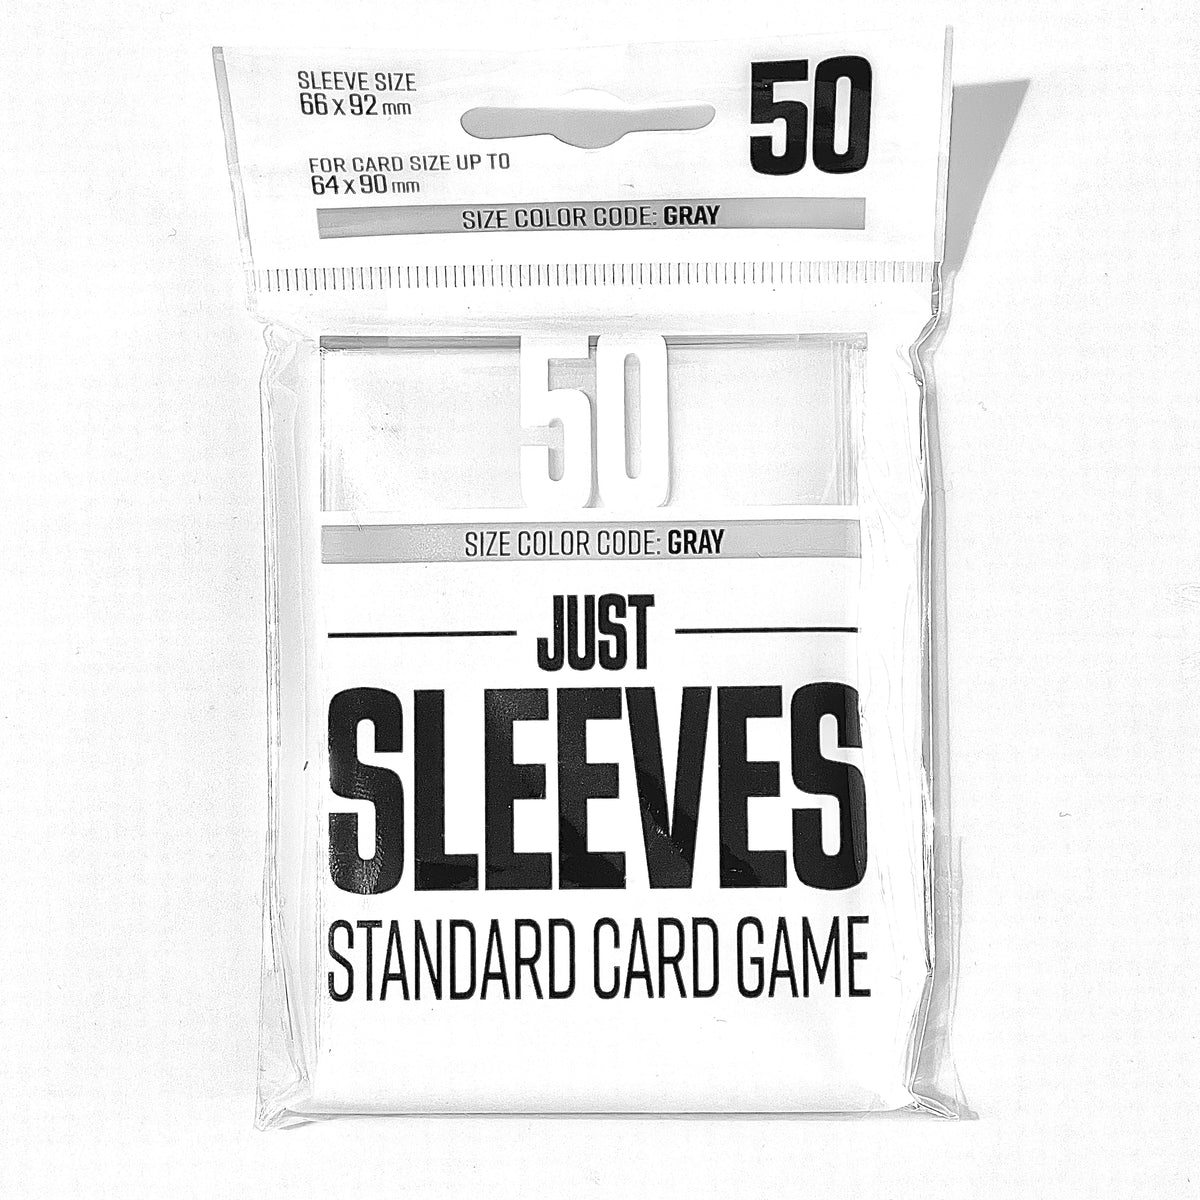 Just Sleeves 66x92 mm standard card game sleeves